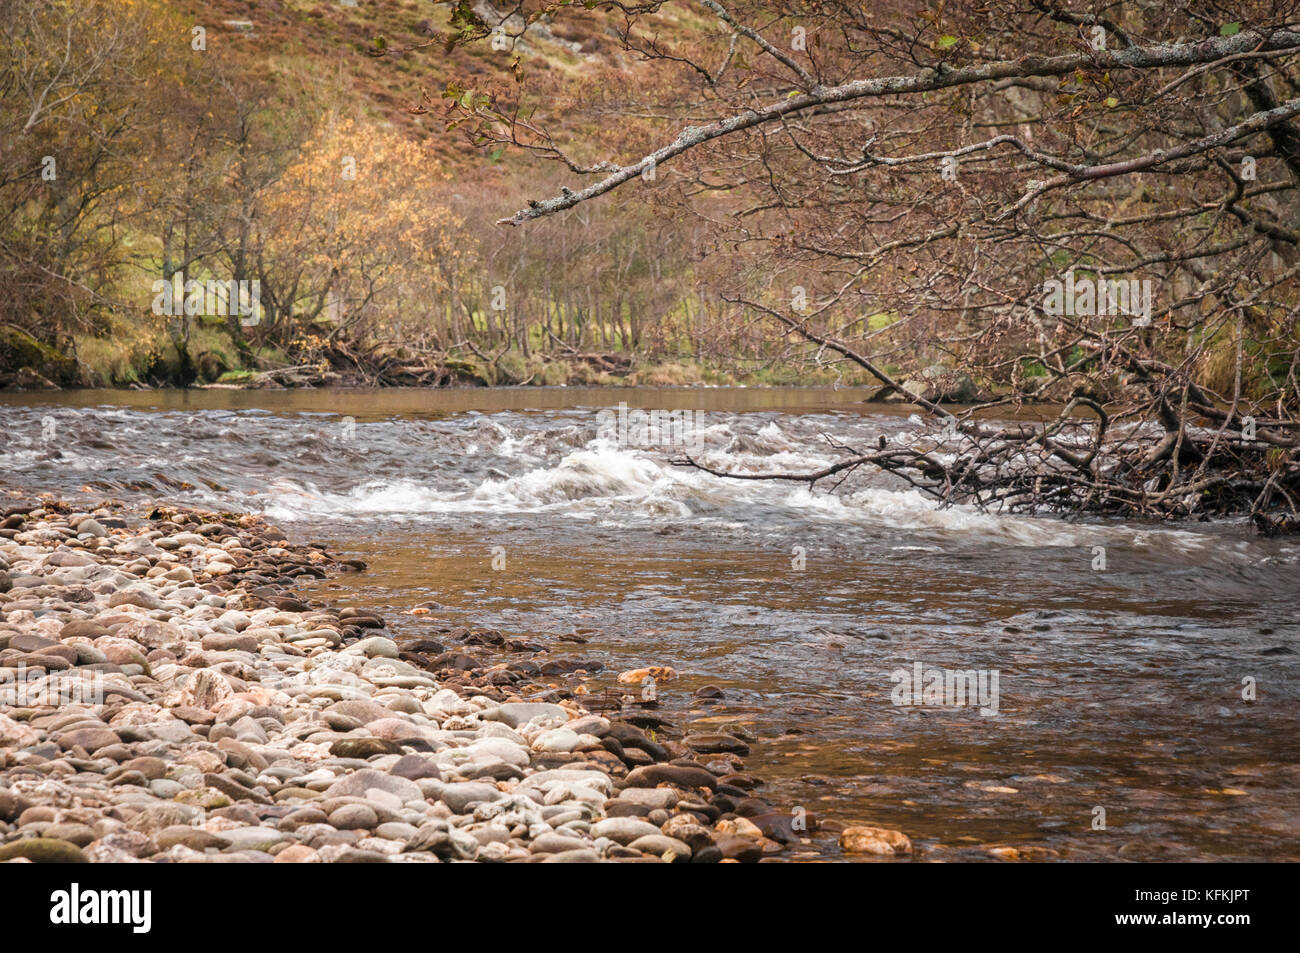 La rivière en amande des sma glen, Perth and Kinross, en Écosse Banque D'Images